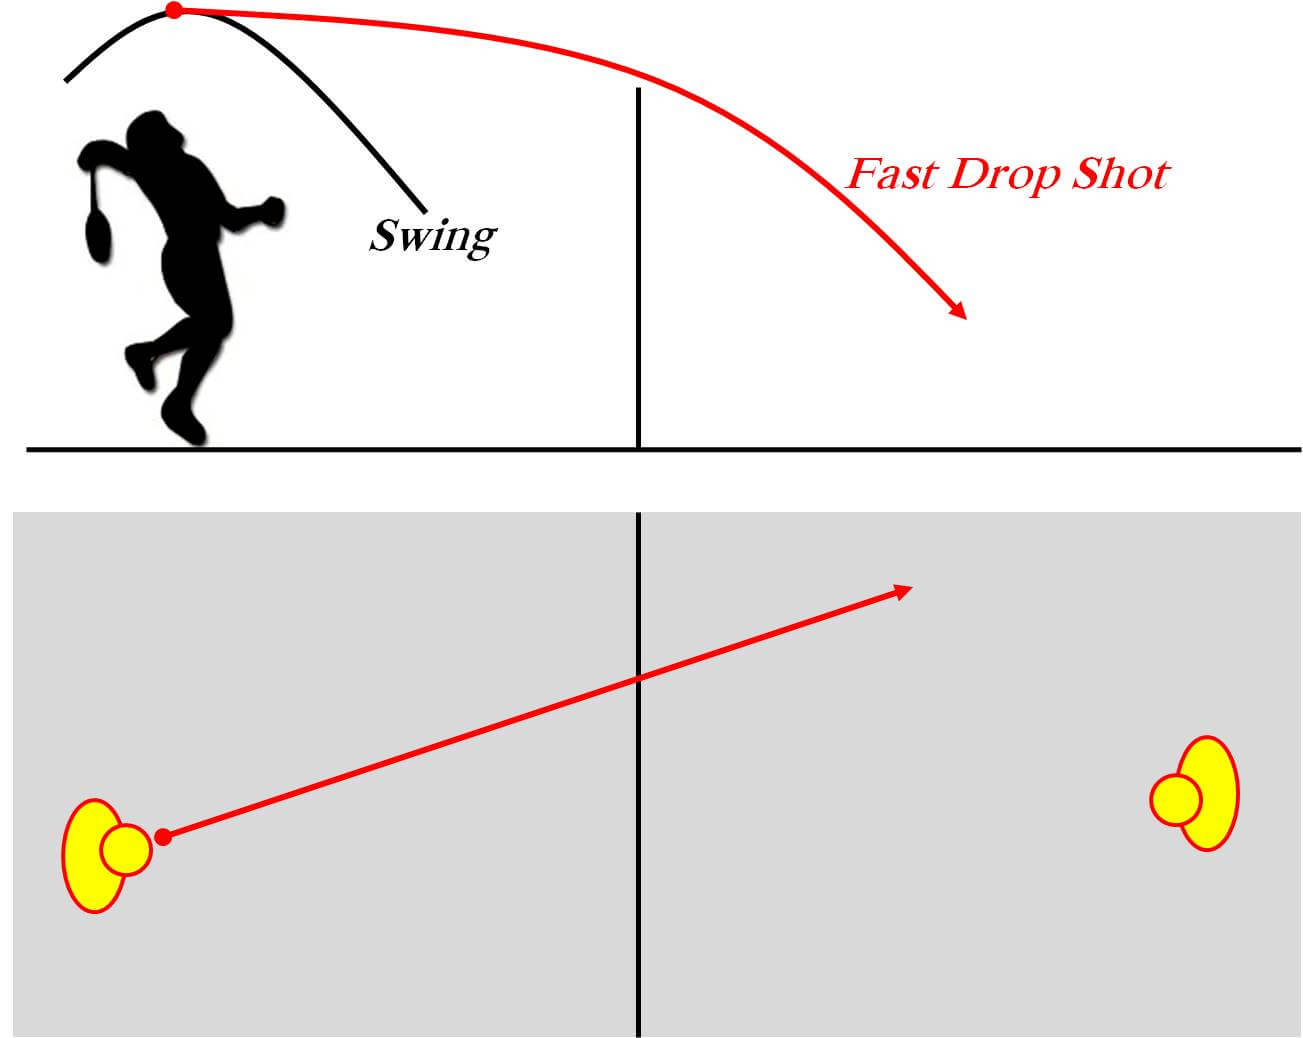 Fast_Drop_Shot_Badminton_Khelmart_2020